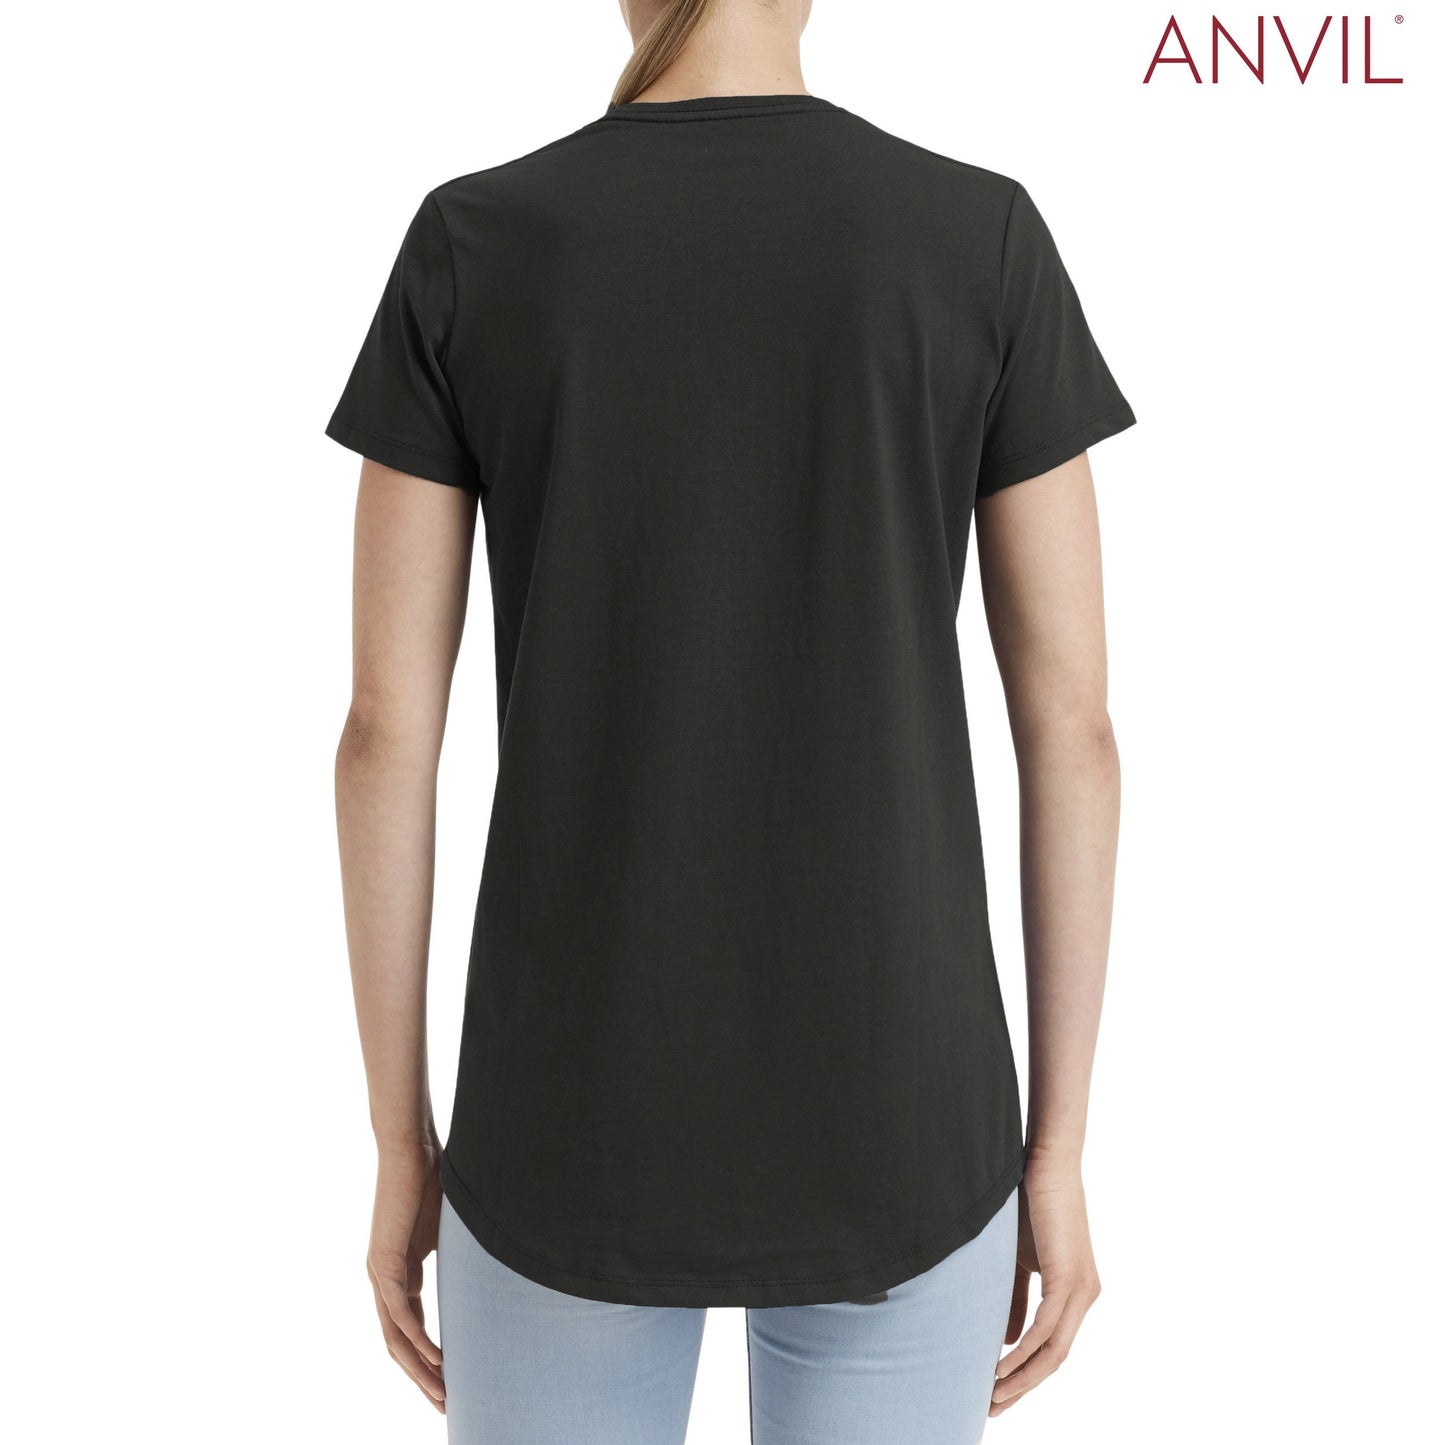 790L Anvil Ladies™ Urban T-Shirt